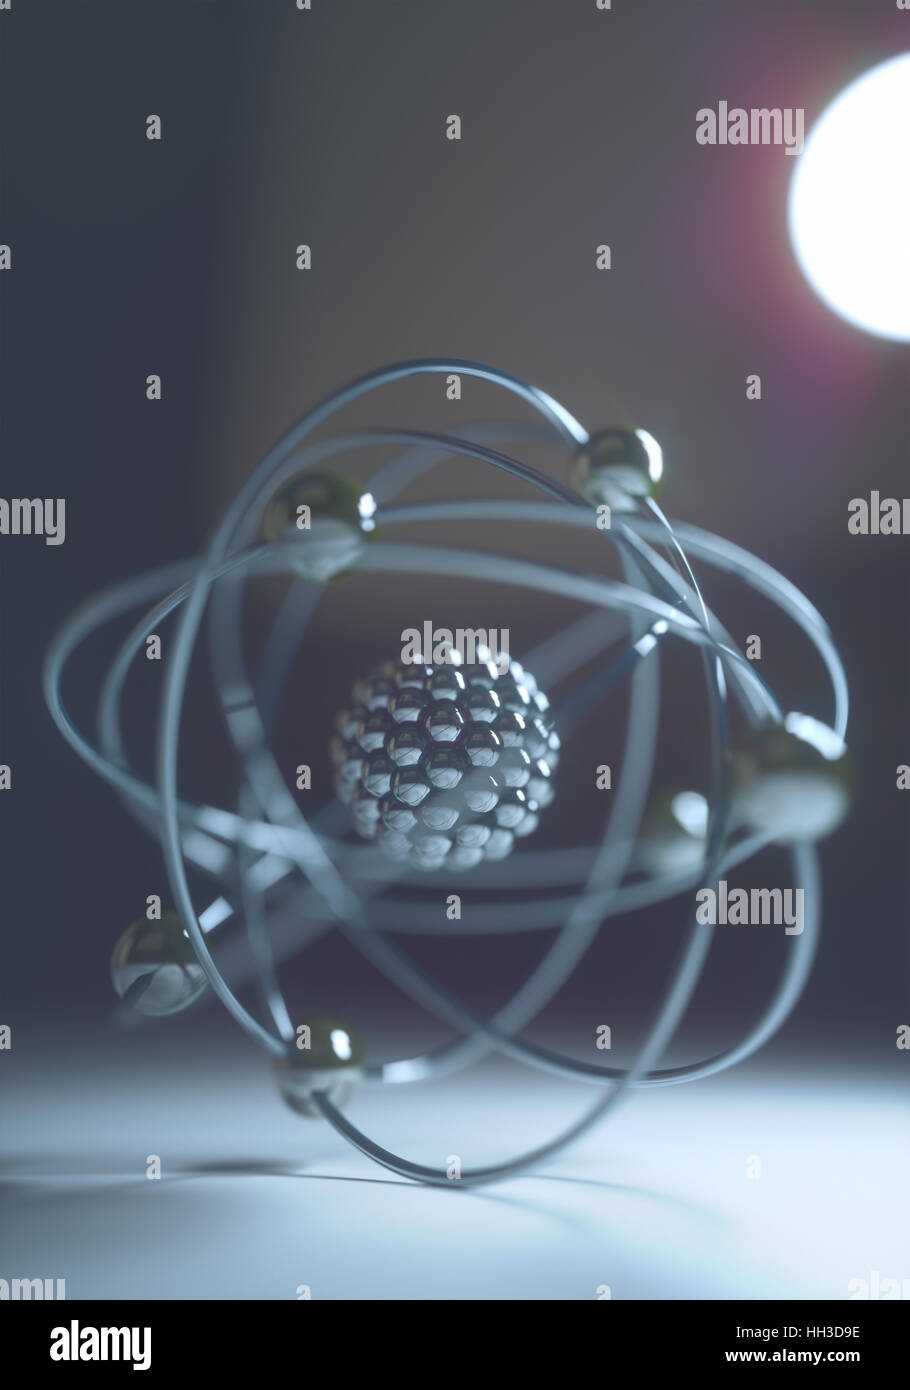 Modèle atomique en équilibre avec rétro-éclairage. Image Concept de la physique et de la chimie. Banque D'Images